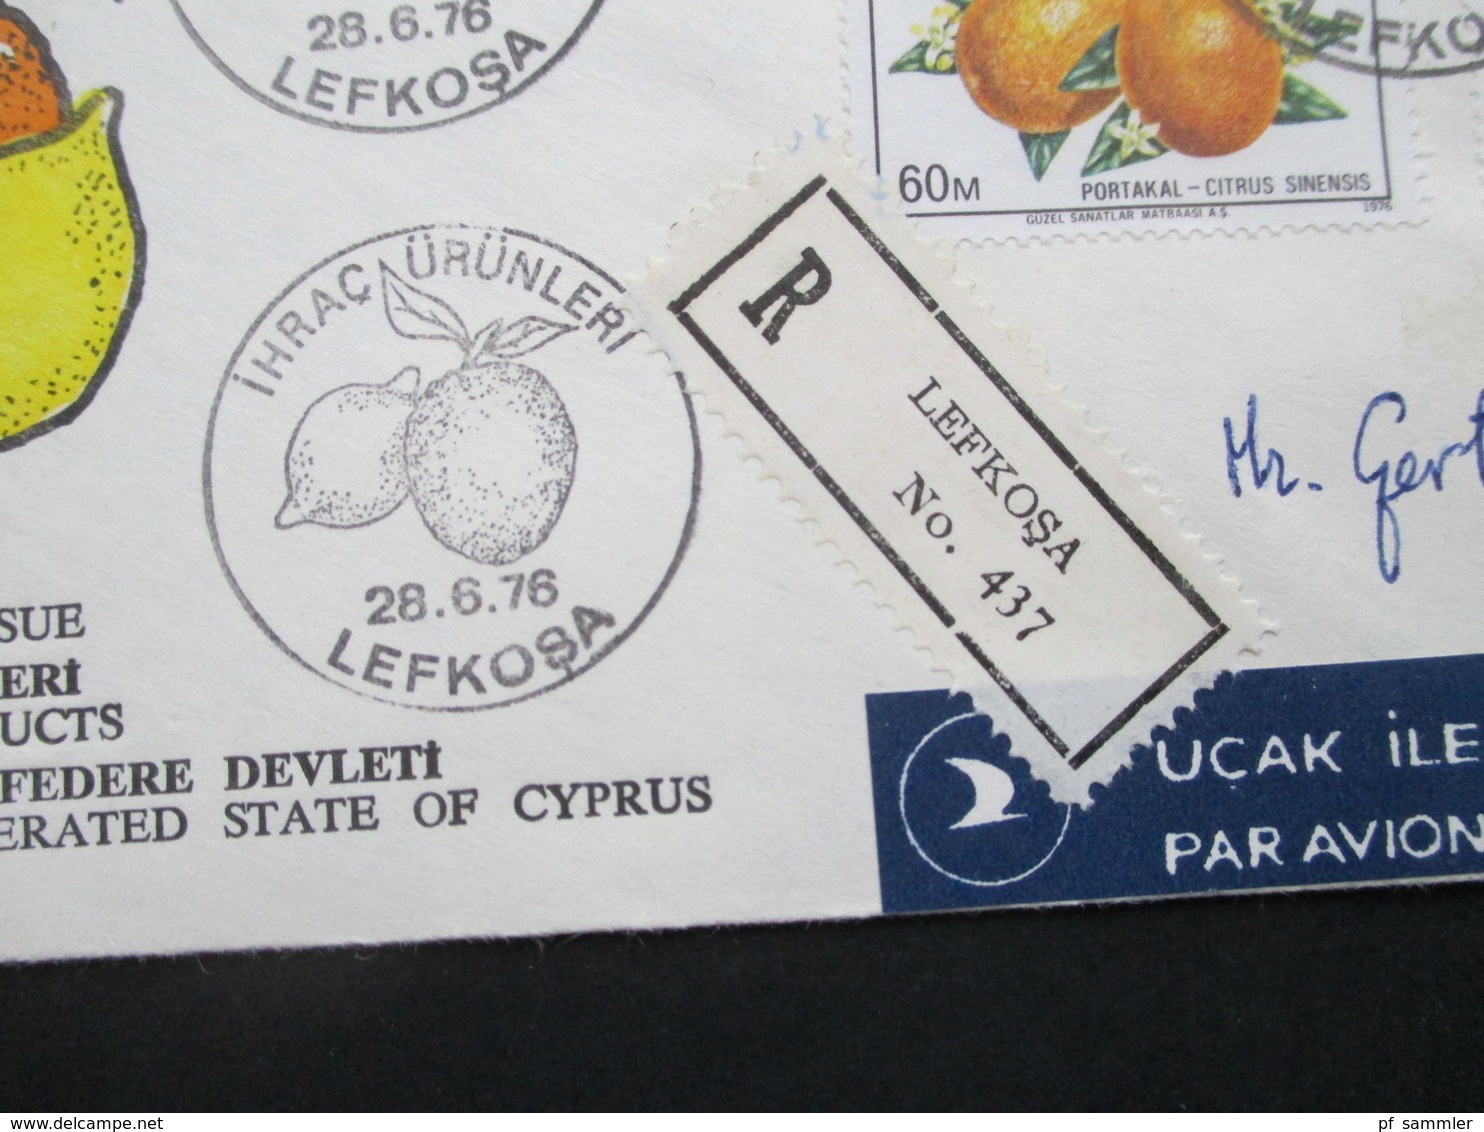 Türkei / Zypern 1976 Einschreiben Lefkosa FDC Motivmarken Früchte Luftpost / Air Mail Nach Deutschland - Briefe U. Dokumente